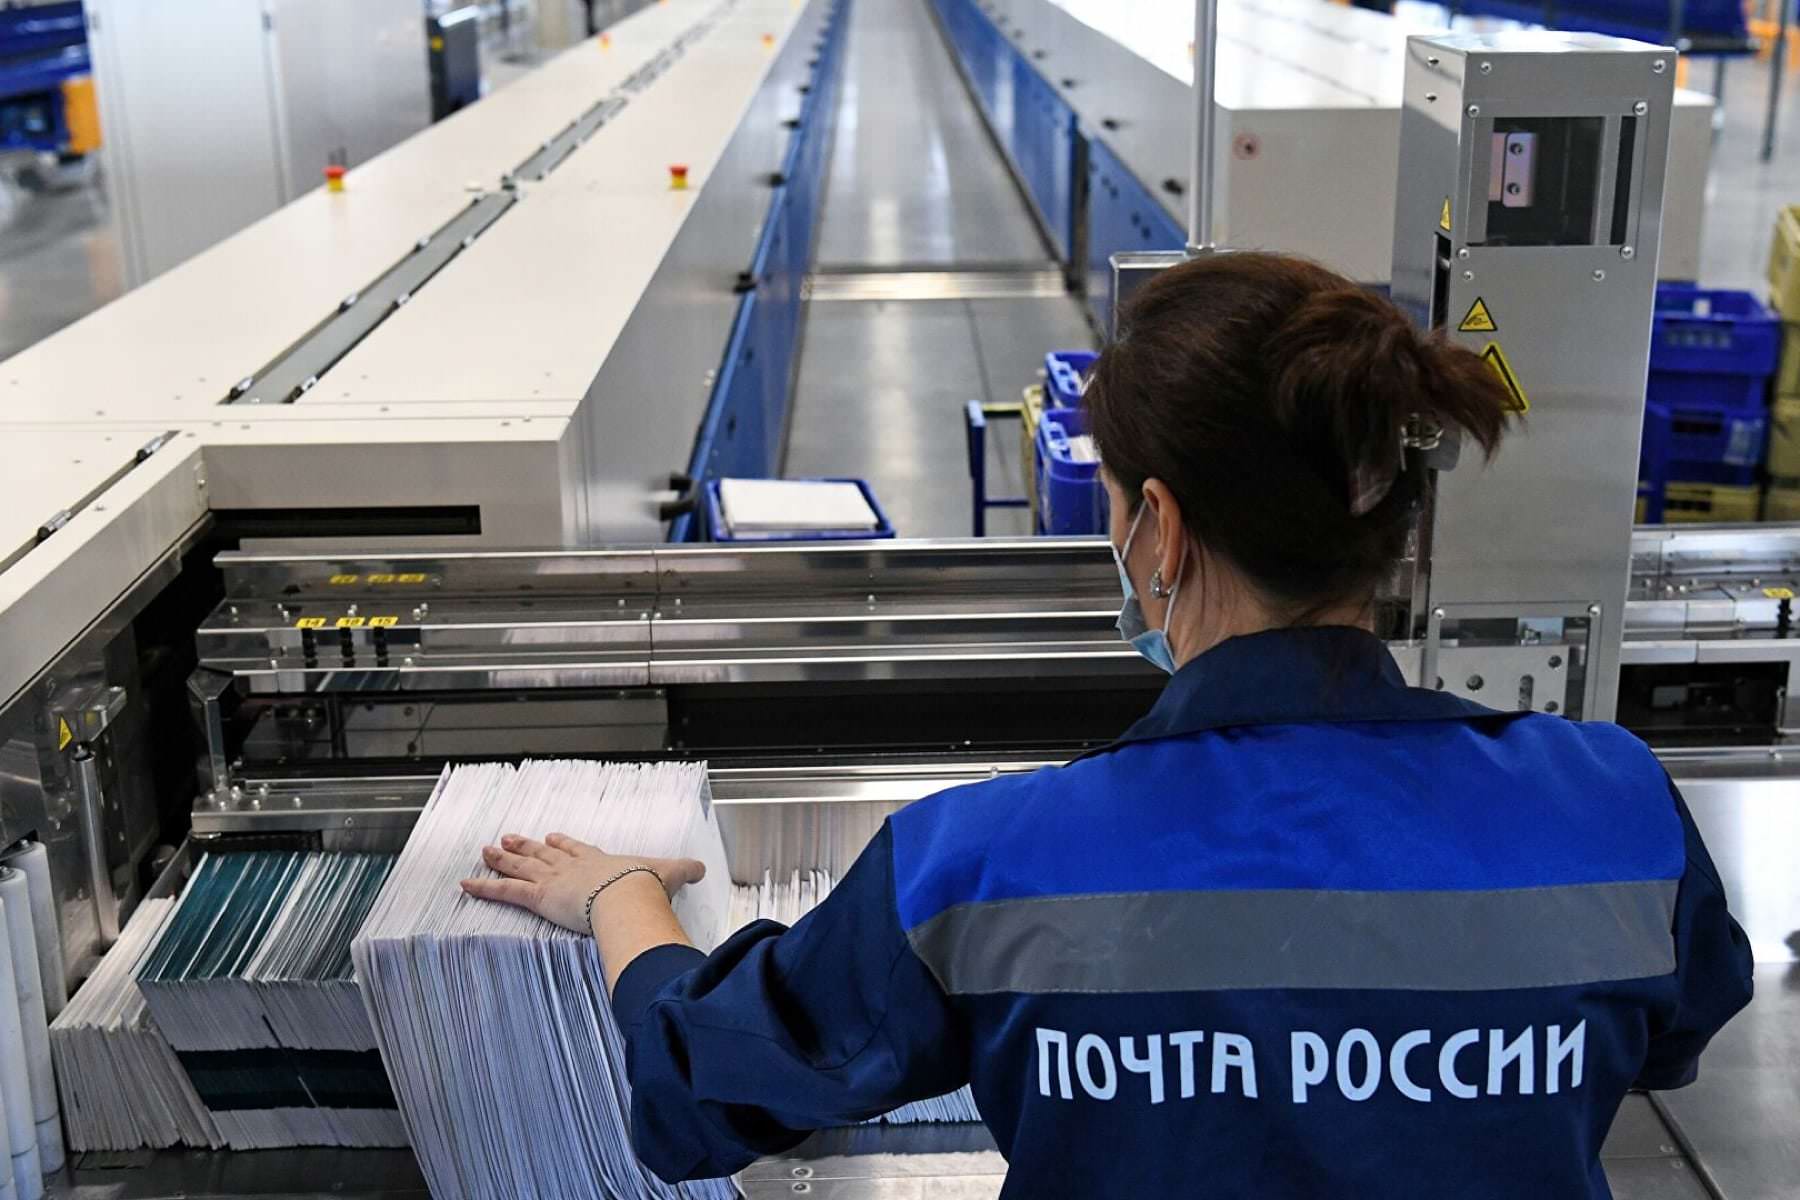 «Почта России» привела миллионы людей в бешенство